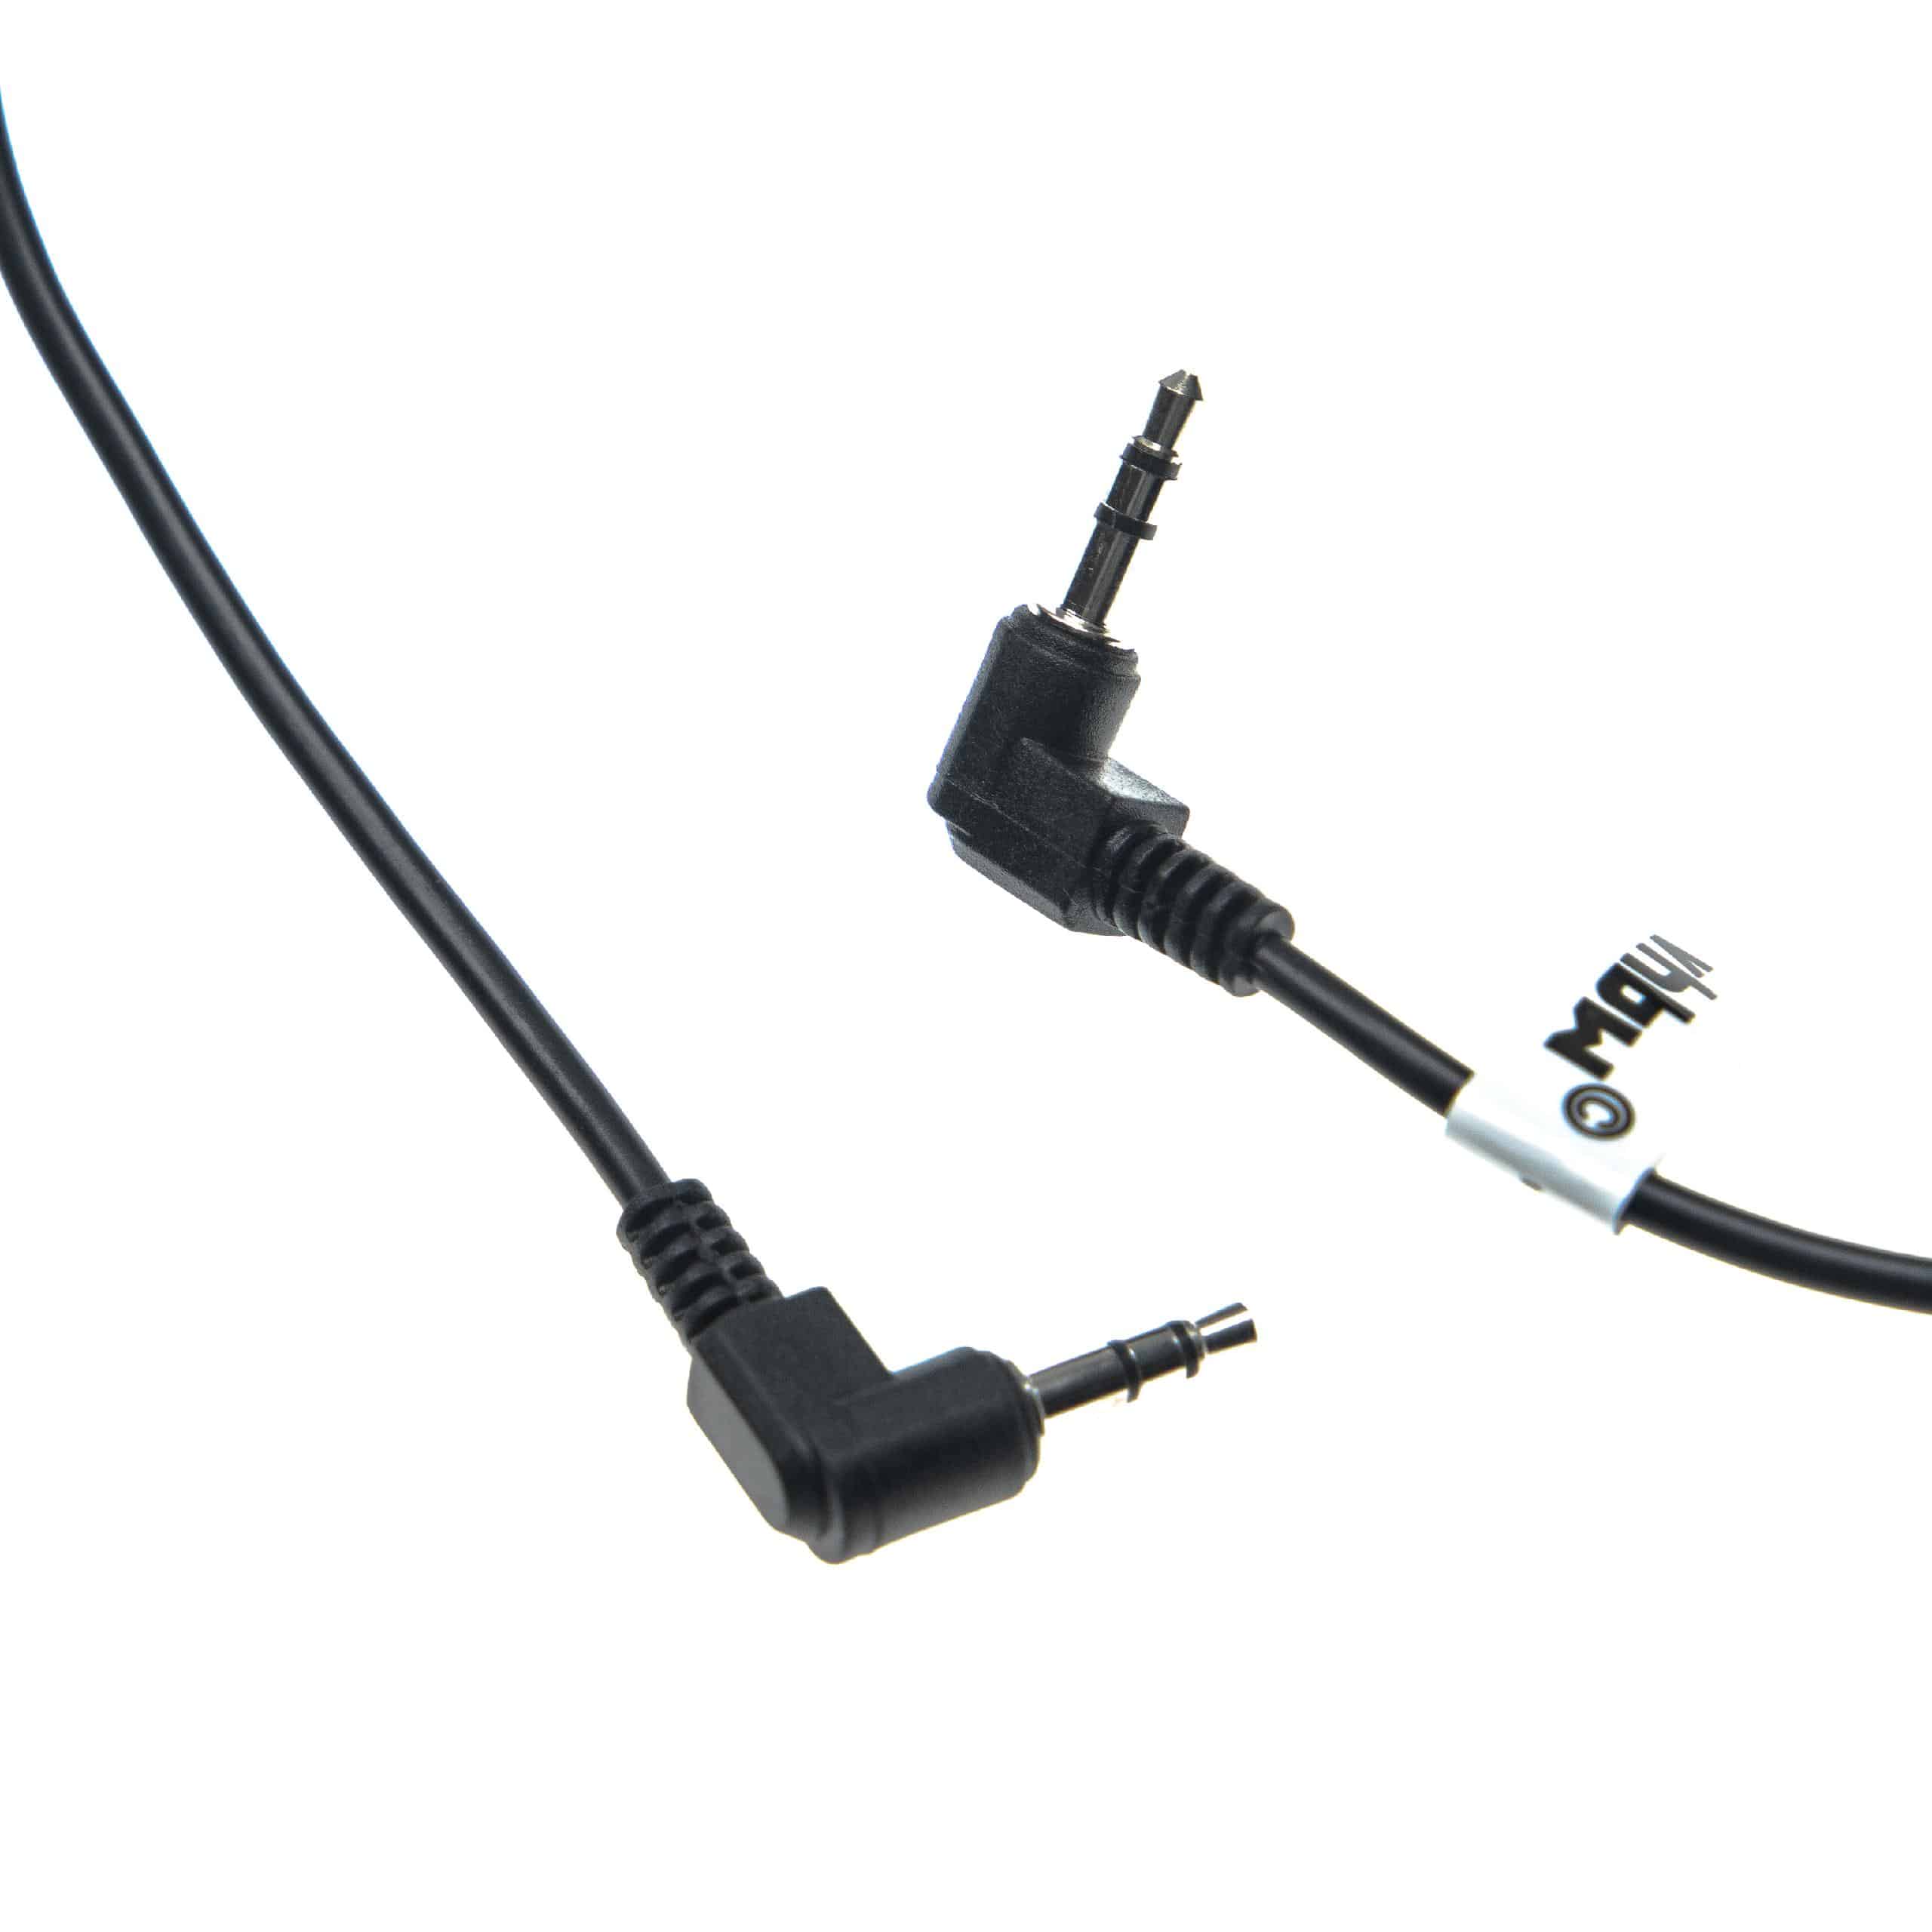 Câble pour déclencheur pour appareil photo Pentax, Samsung, Canon MZ6 - 140cm